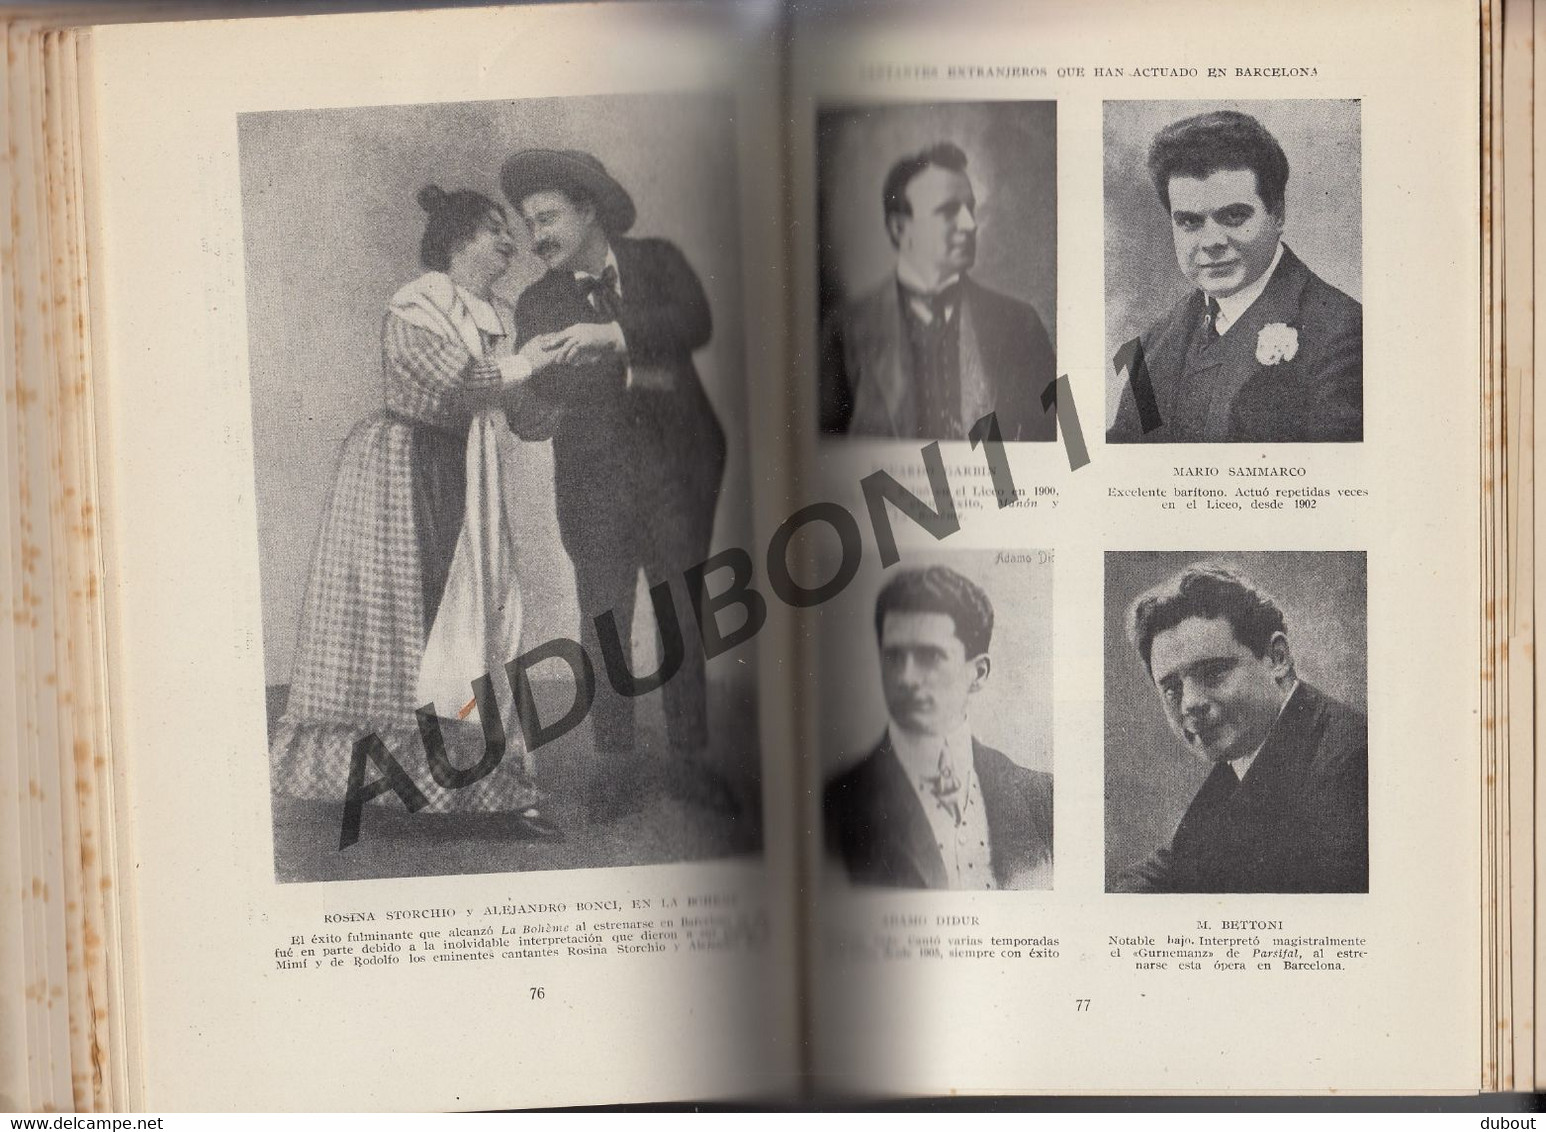 Espagne: Barcelona La Opera en Los Teatros - J. Subira 1946 Tomo 1 + 2 (U55-56)